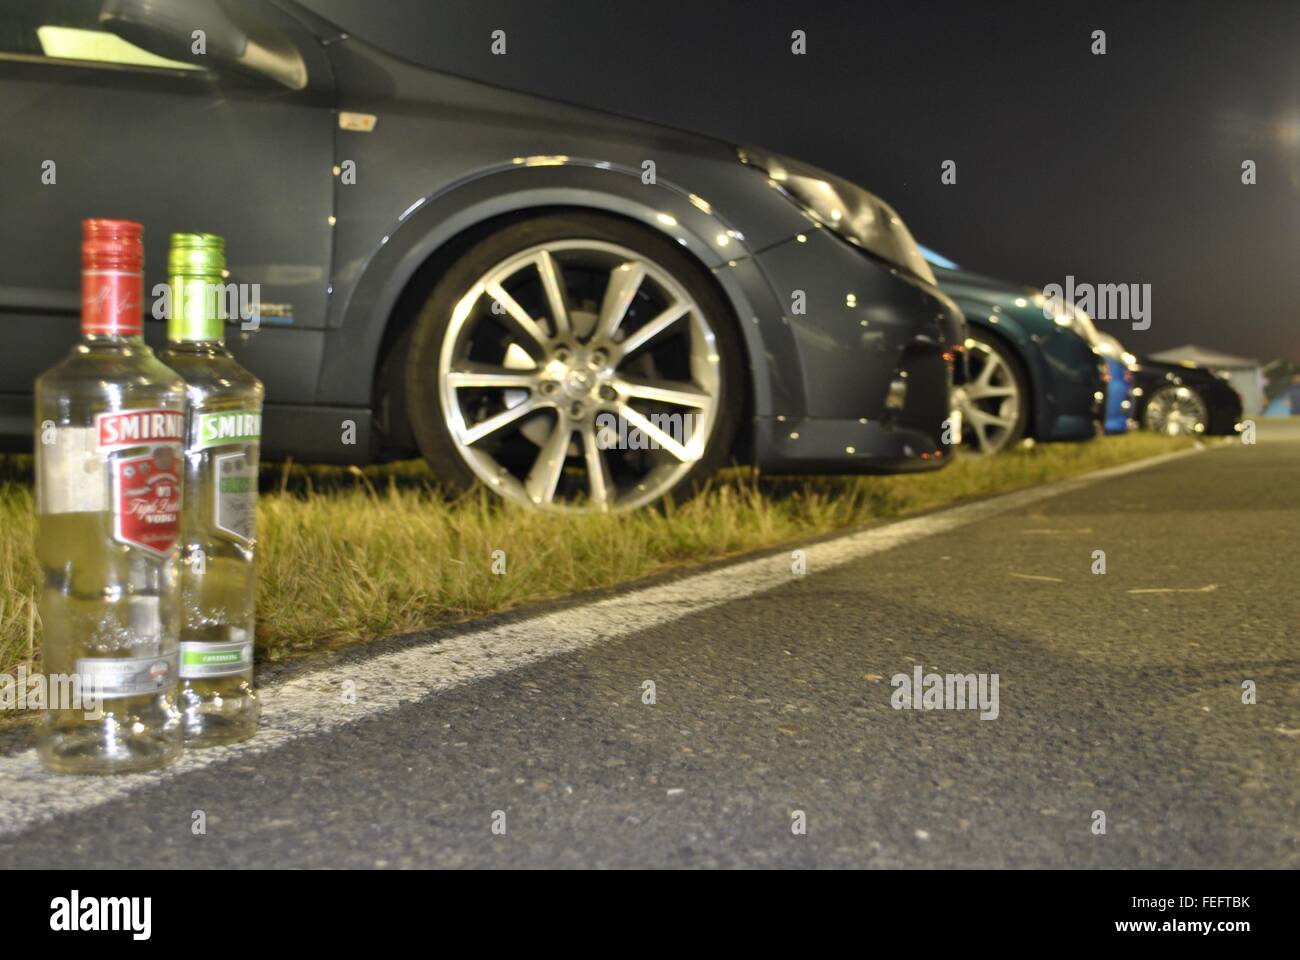 Opel Vauxhall - Treffen Oschersleben l'automobile partie boire dormir Allemagne Camping Banque D'Images